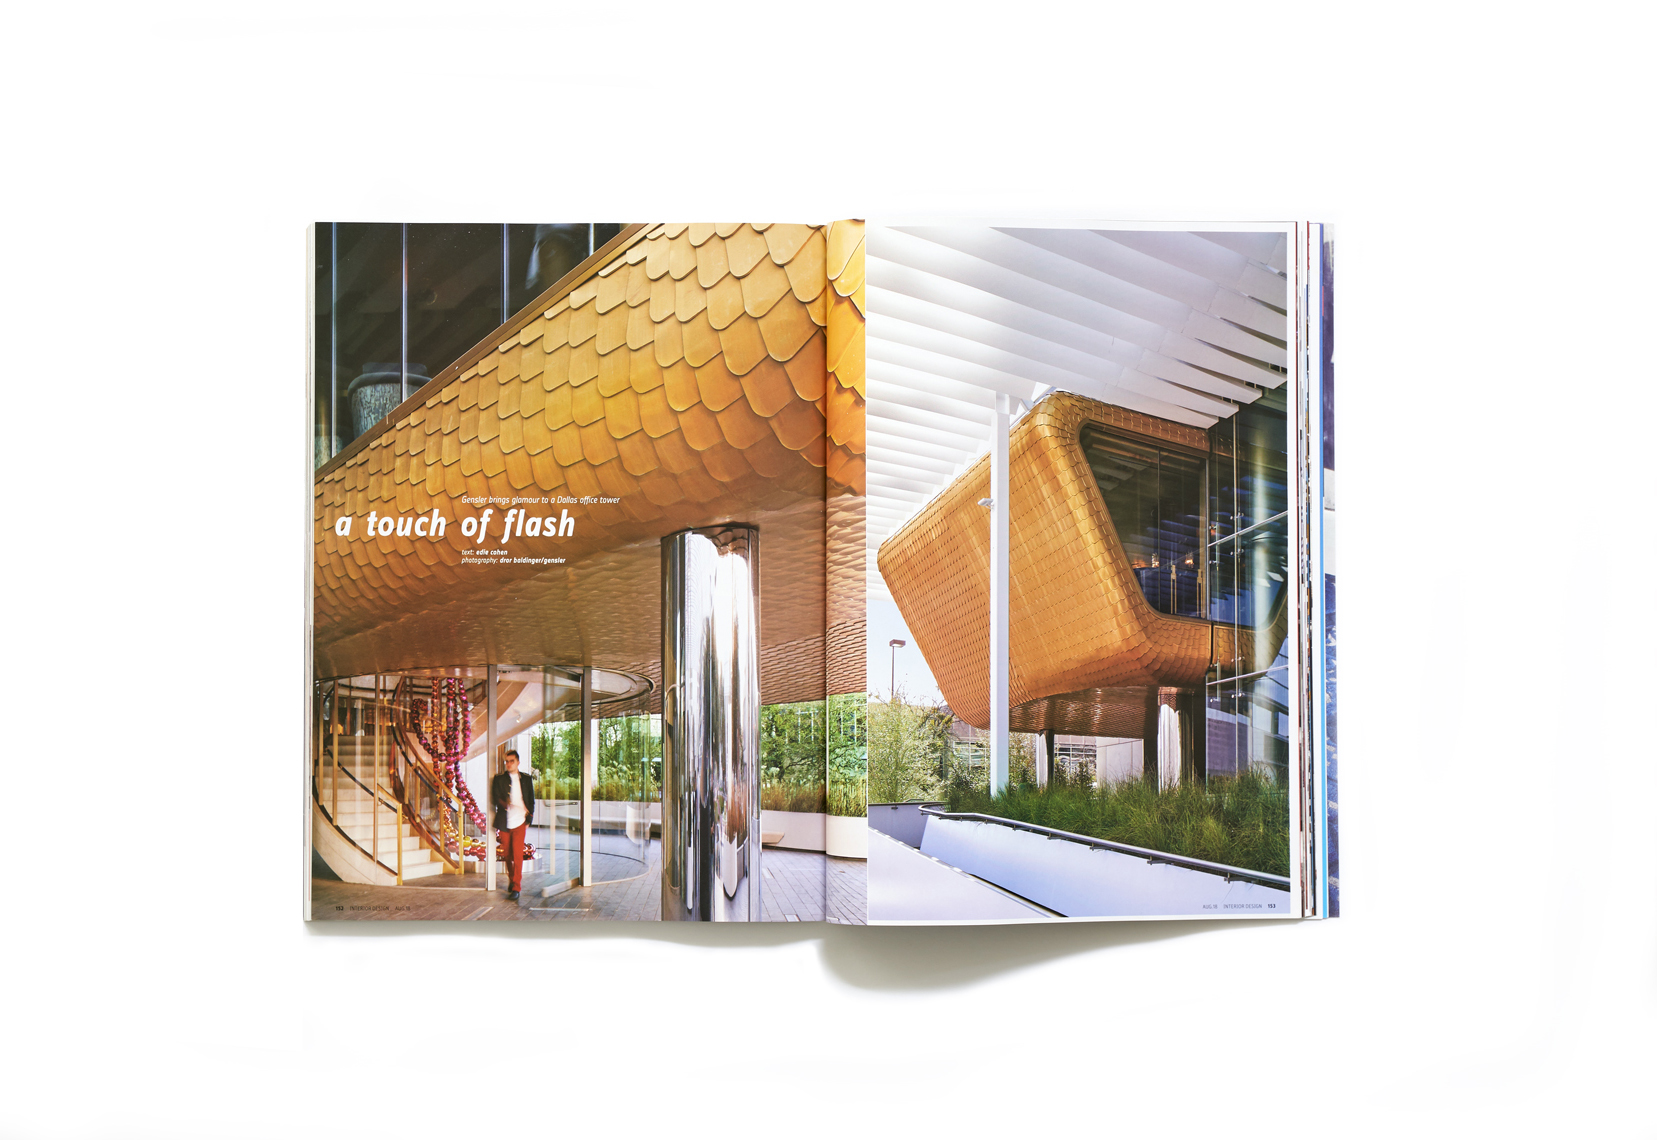 dror baldinger faia architectural photography Interior design magazine Gensler 400 record dallas texas